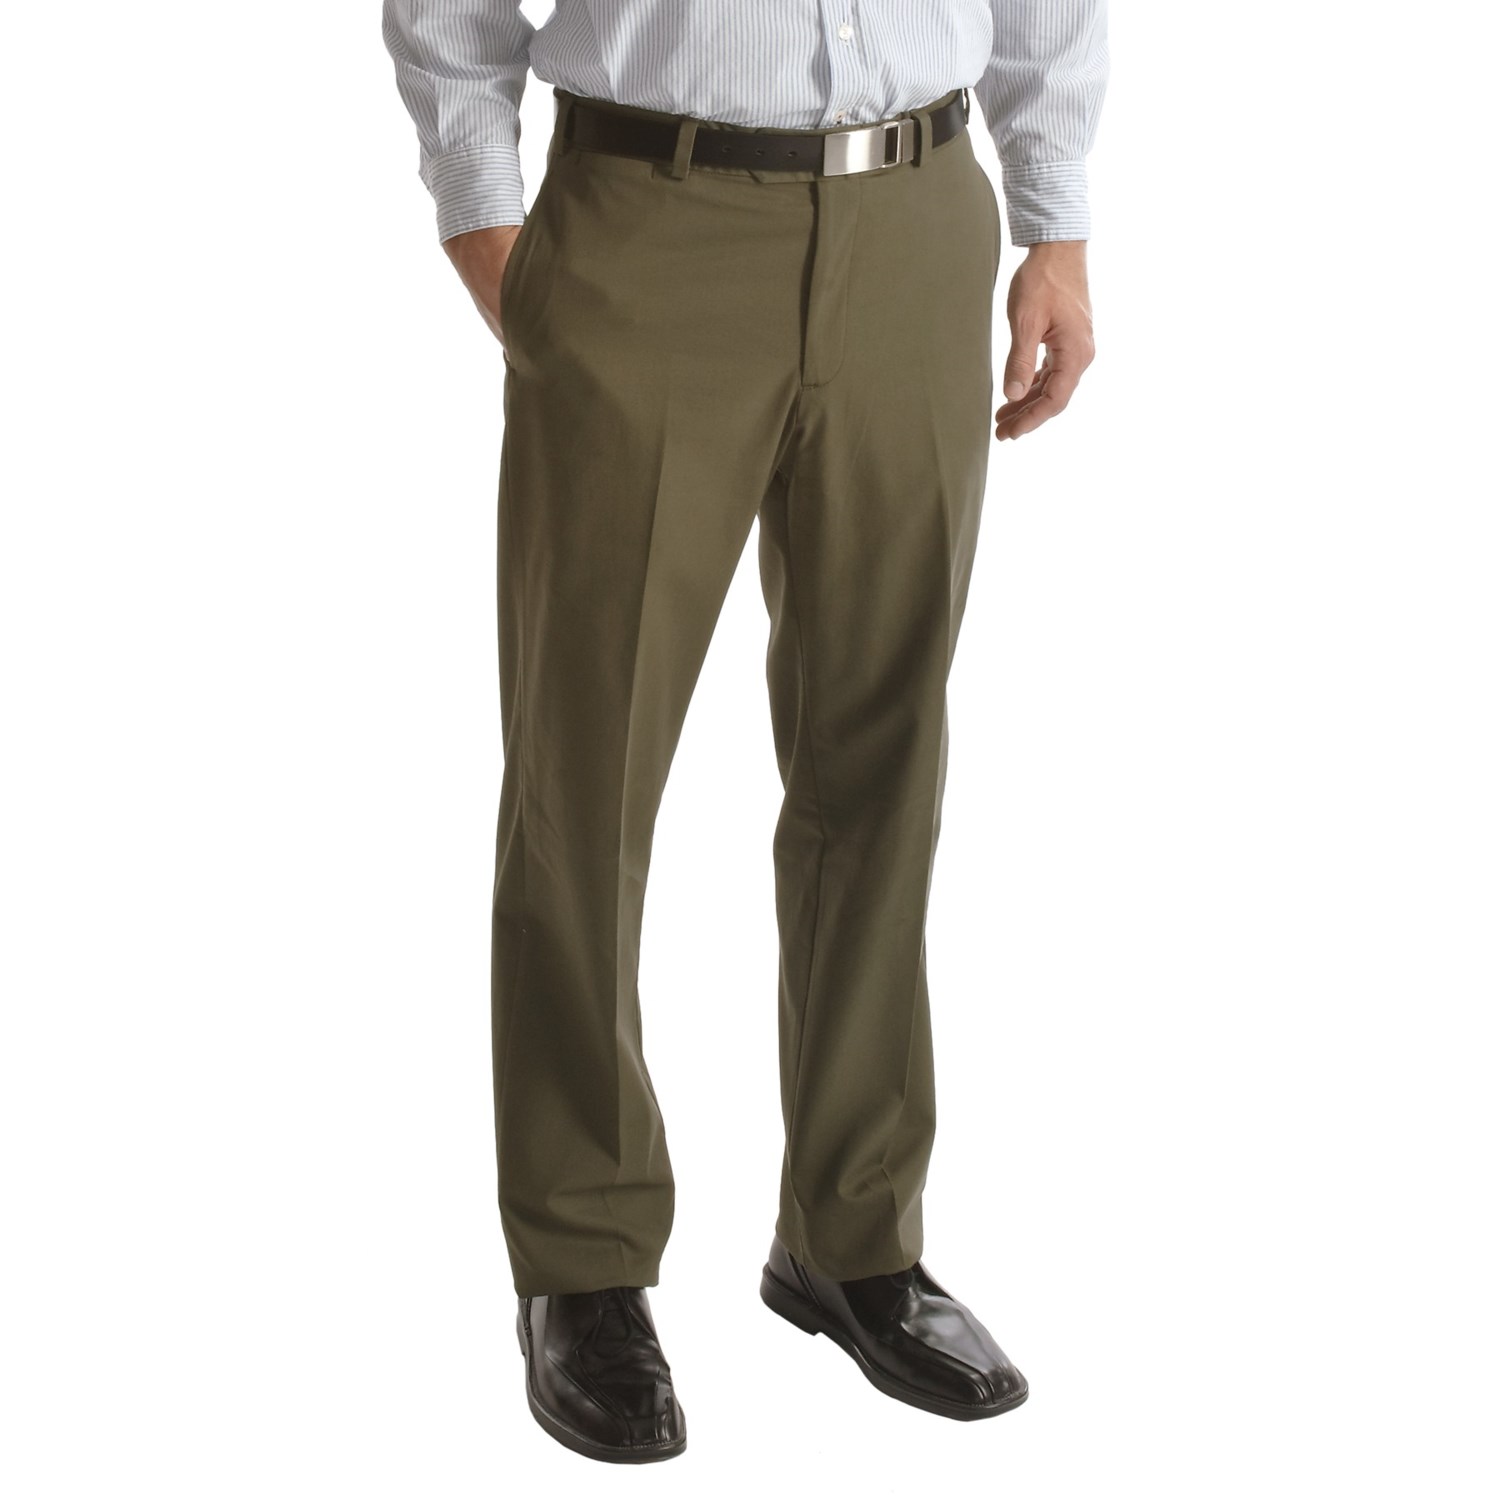 Bills Khakis M2 Cotton Gabardine Pants (For Men) 3303R